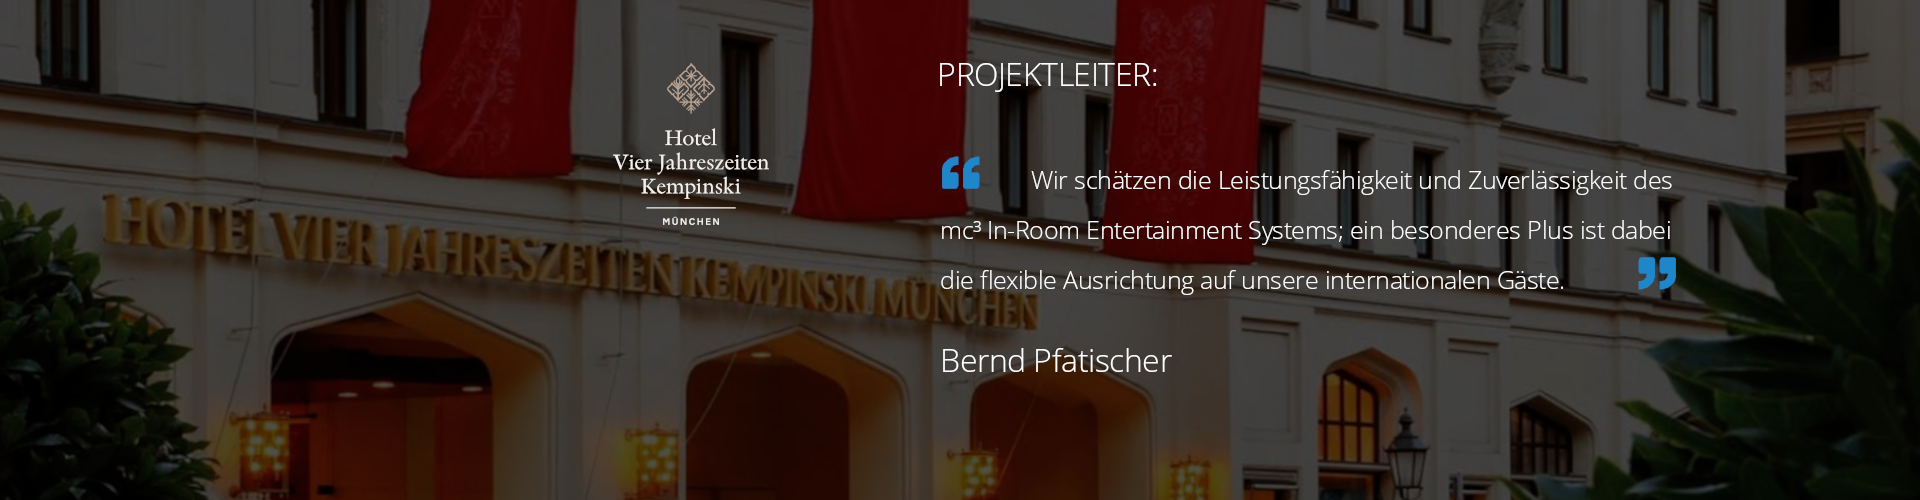 Hotel Vier Jahreszeiten Kempinski München, Testimonial